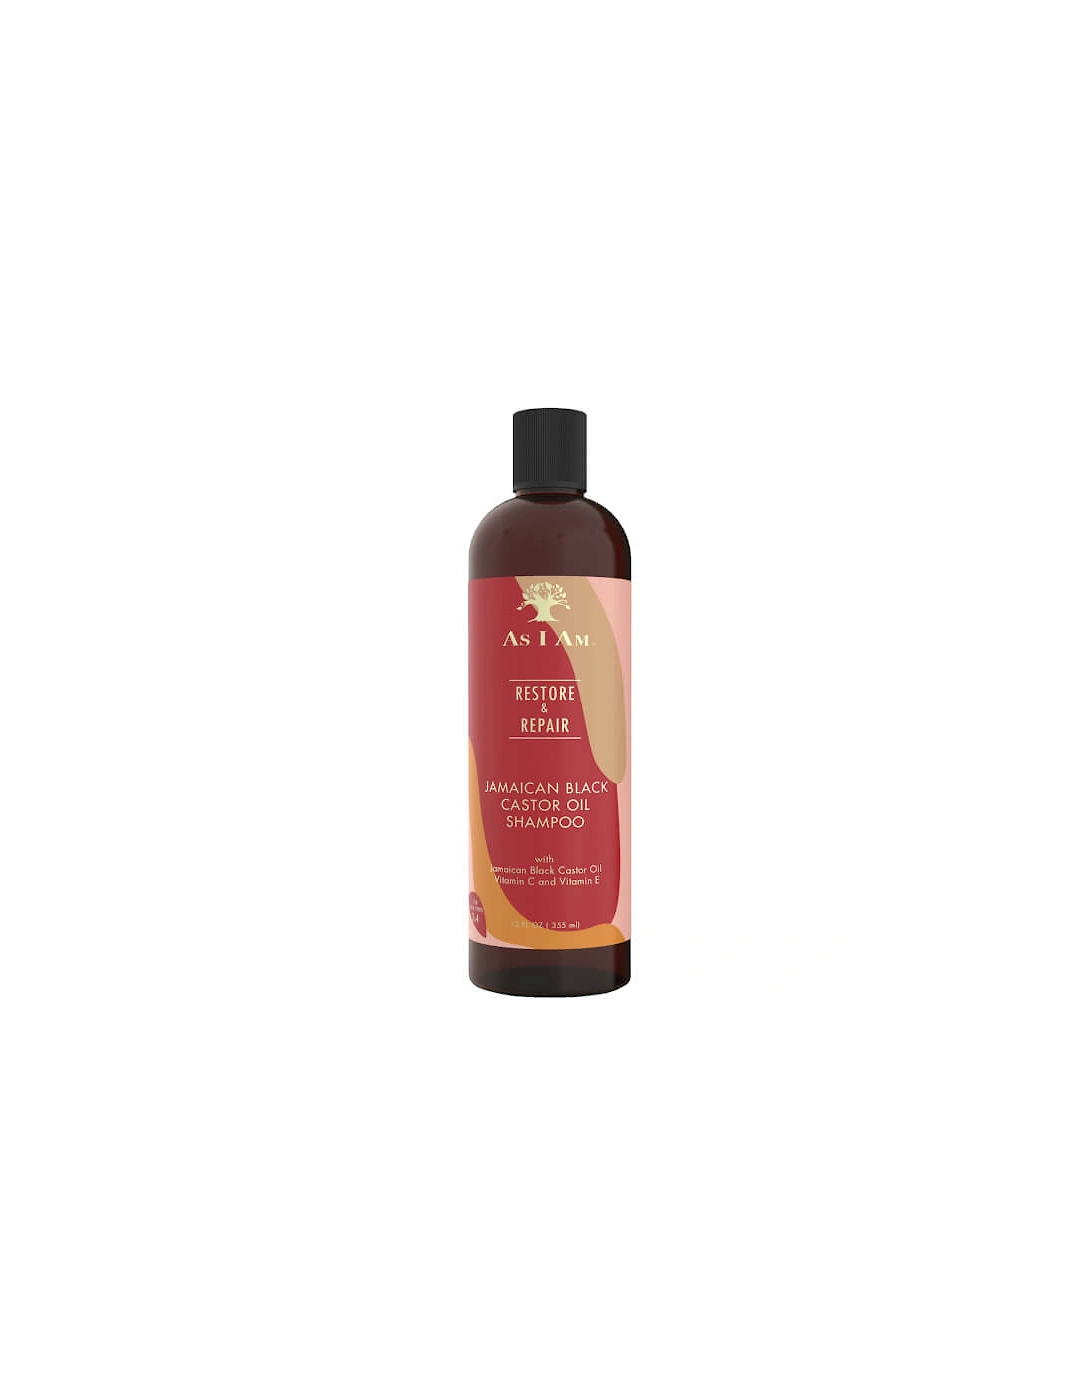 Jamaican Black Castor Oil Shampoo - As I Am, 2 of 1